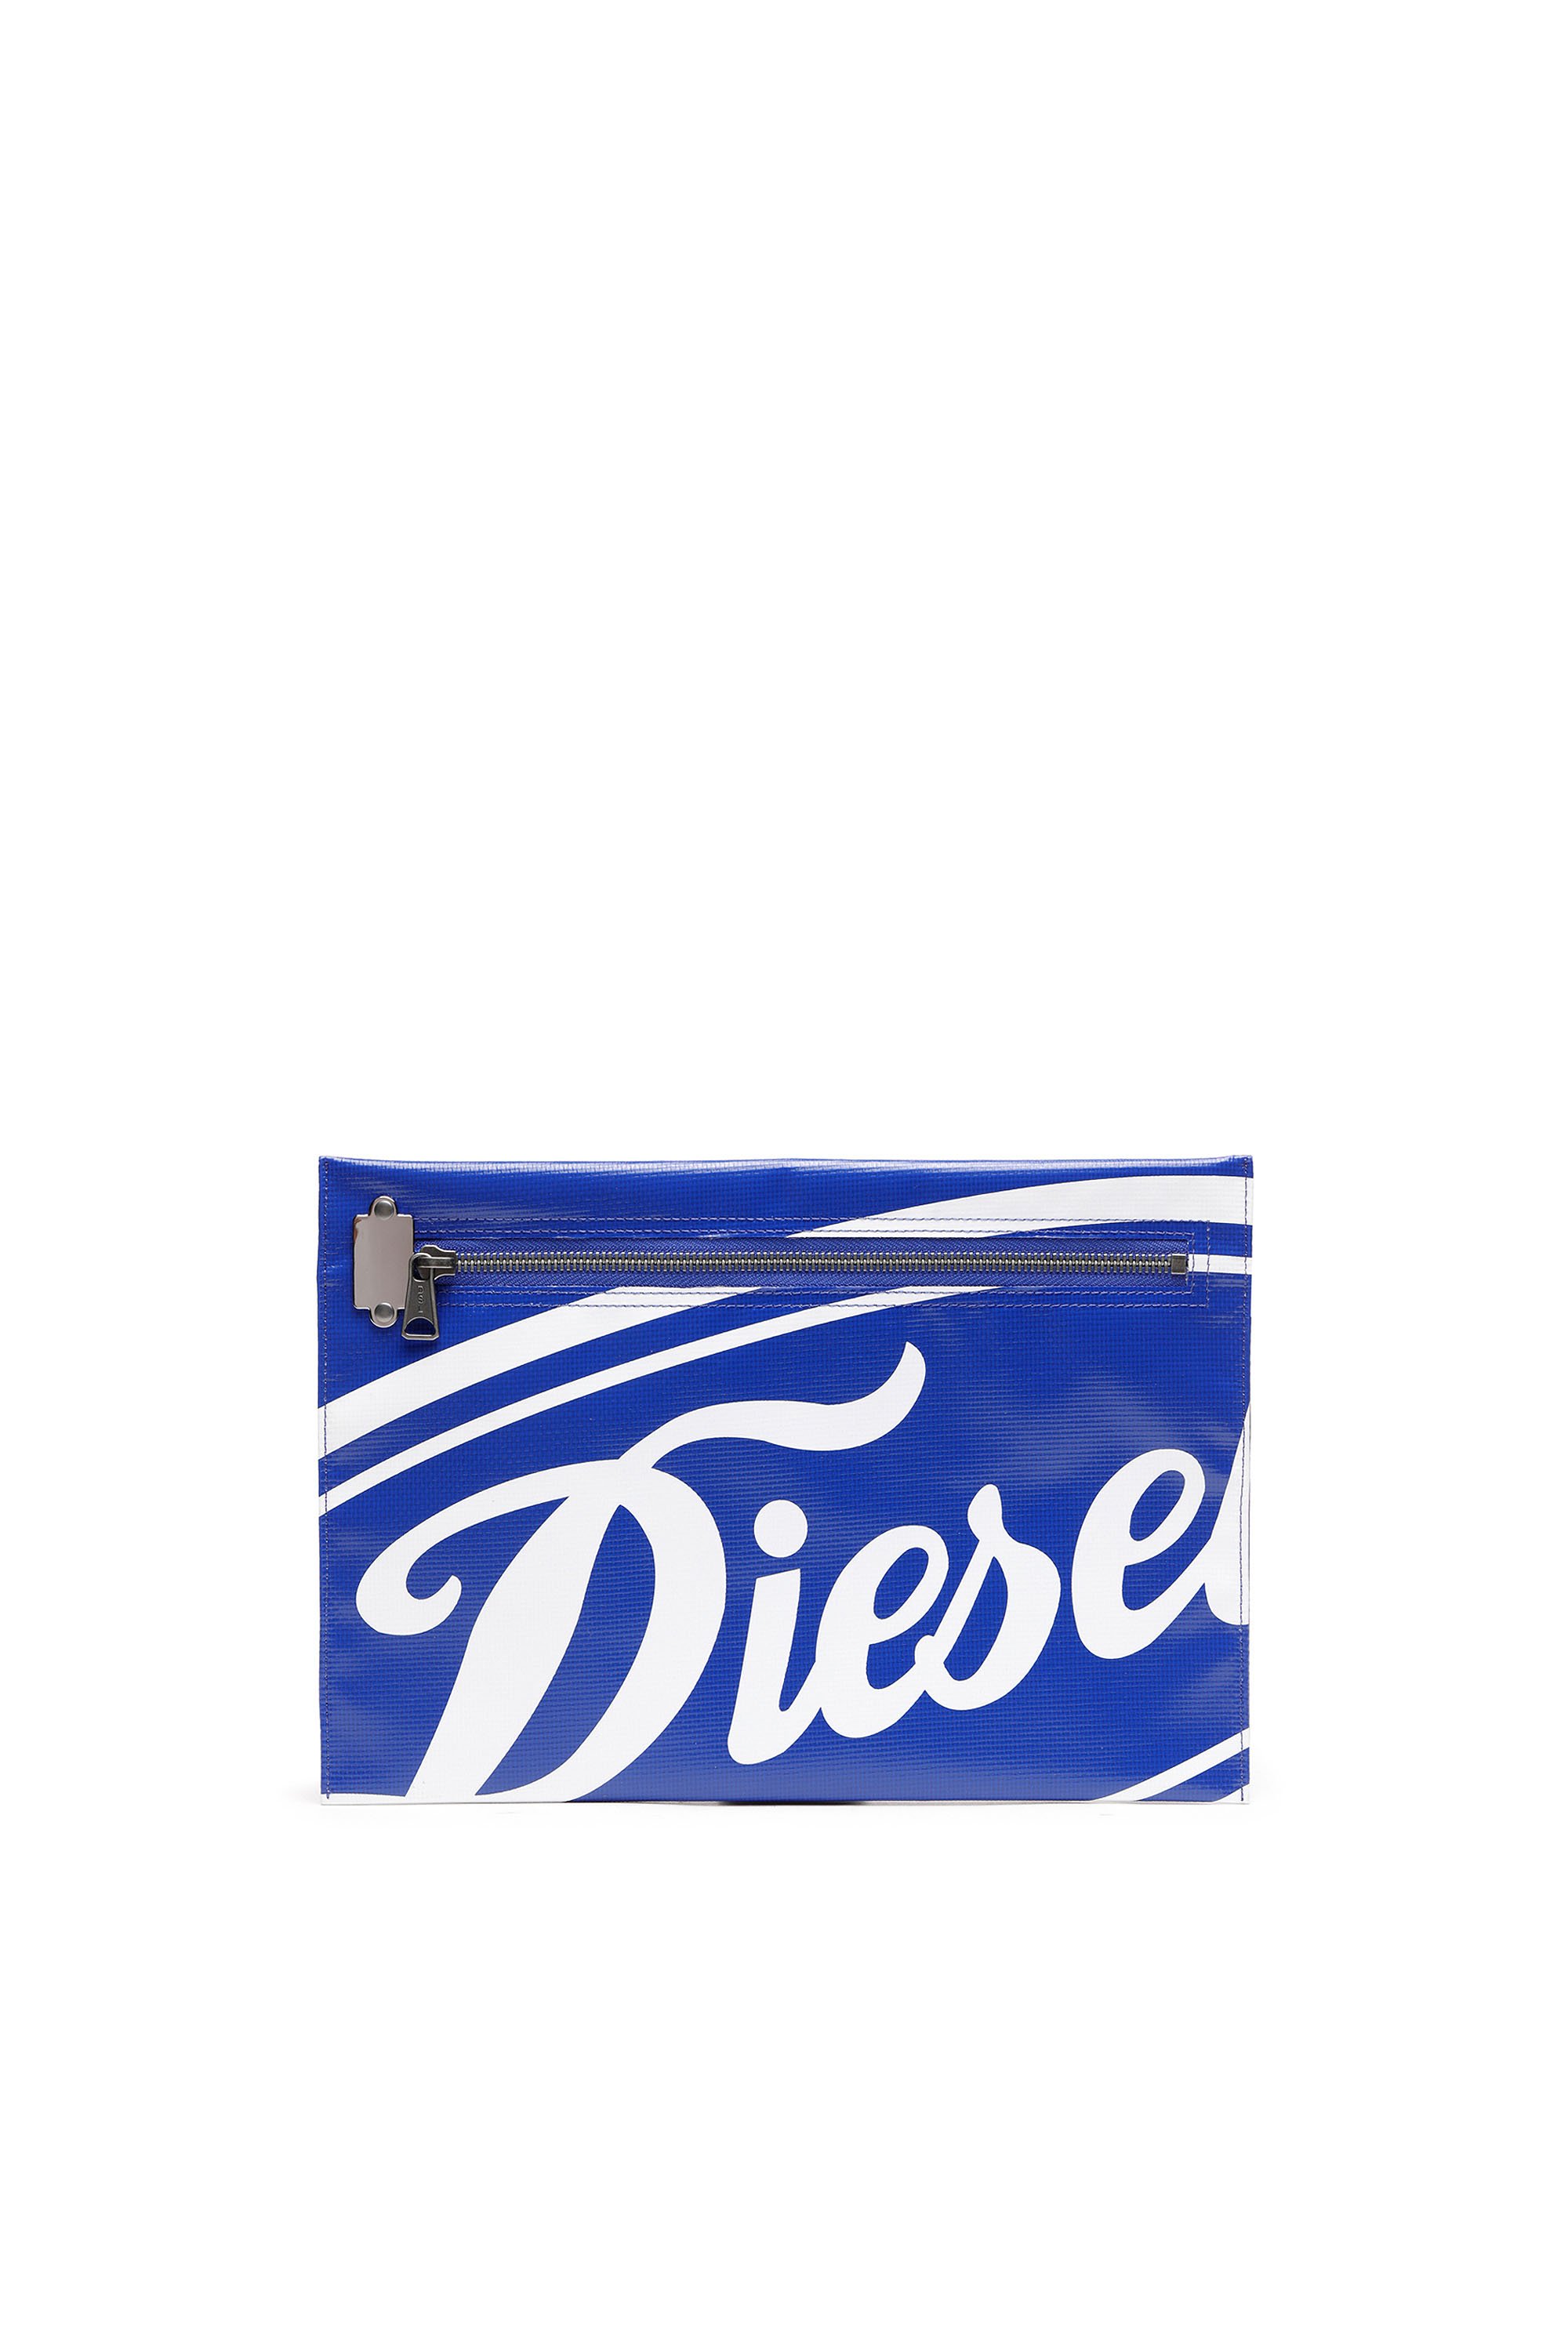 Diesel - SLYW, Blau/Weiss - Image 1